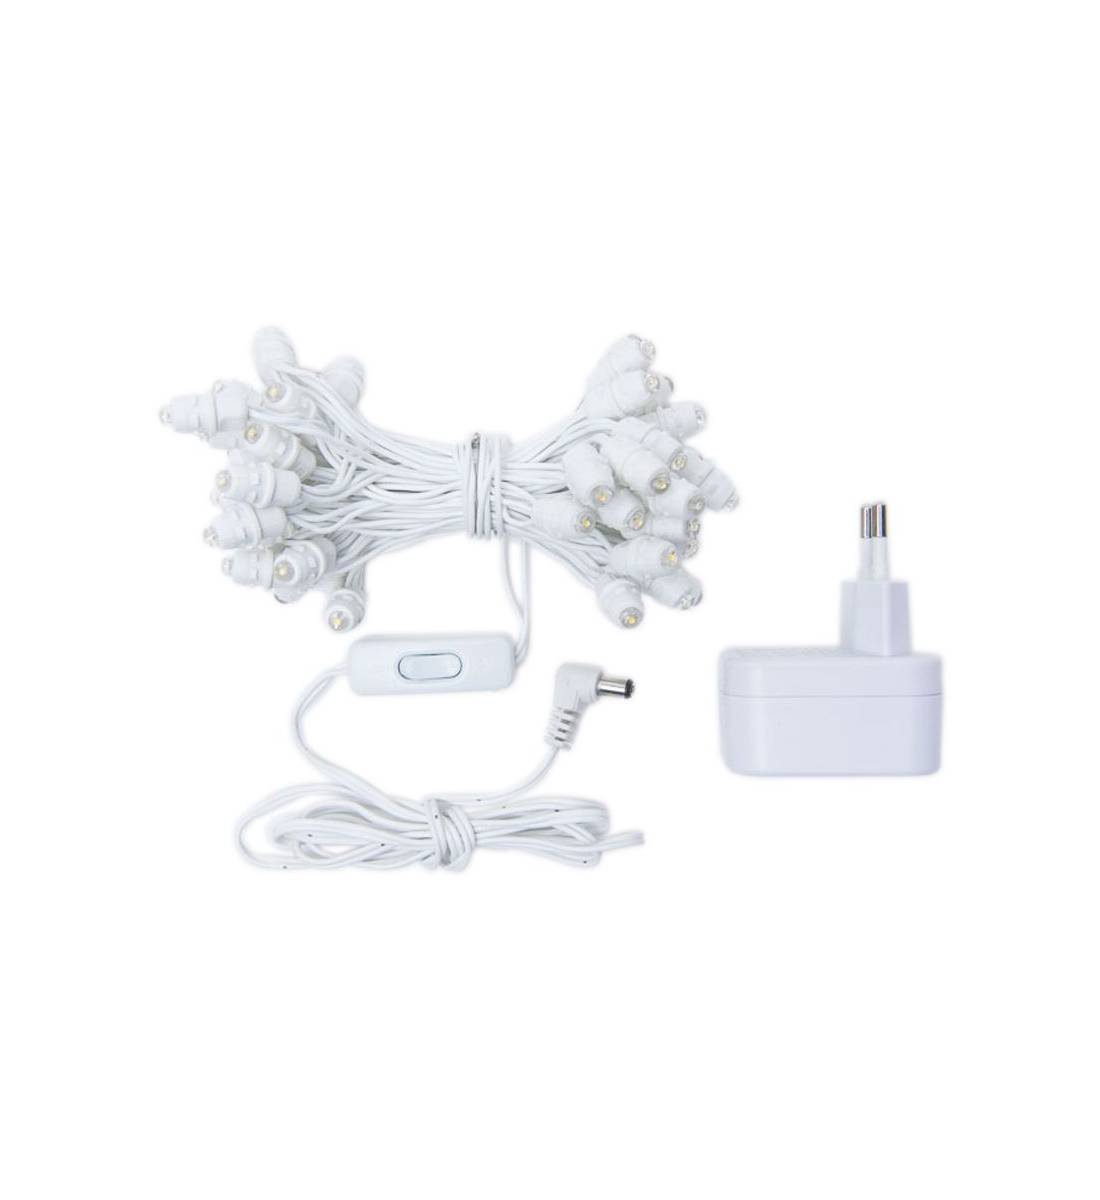 Guirlande Premium - 50 LED câble blanc CE - Accessoires Premium - La Case de Cousin Paul